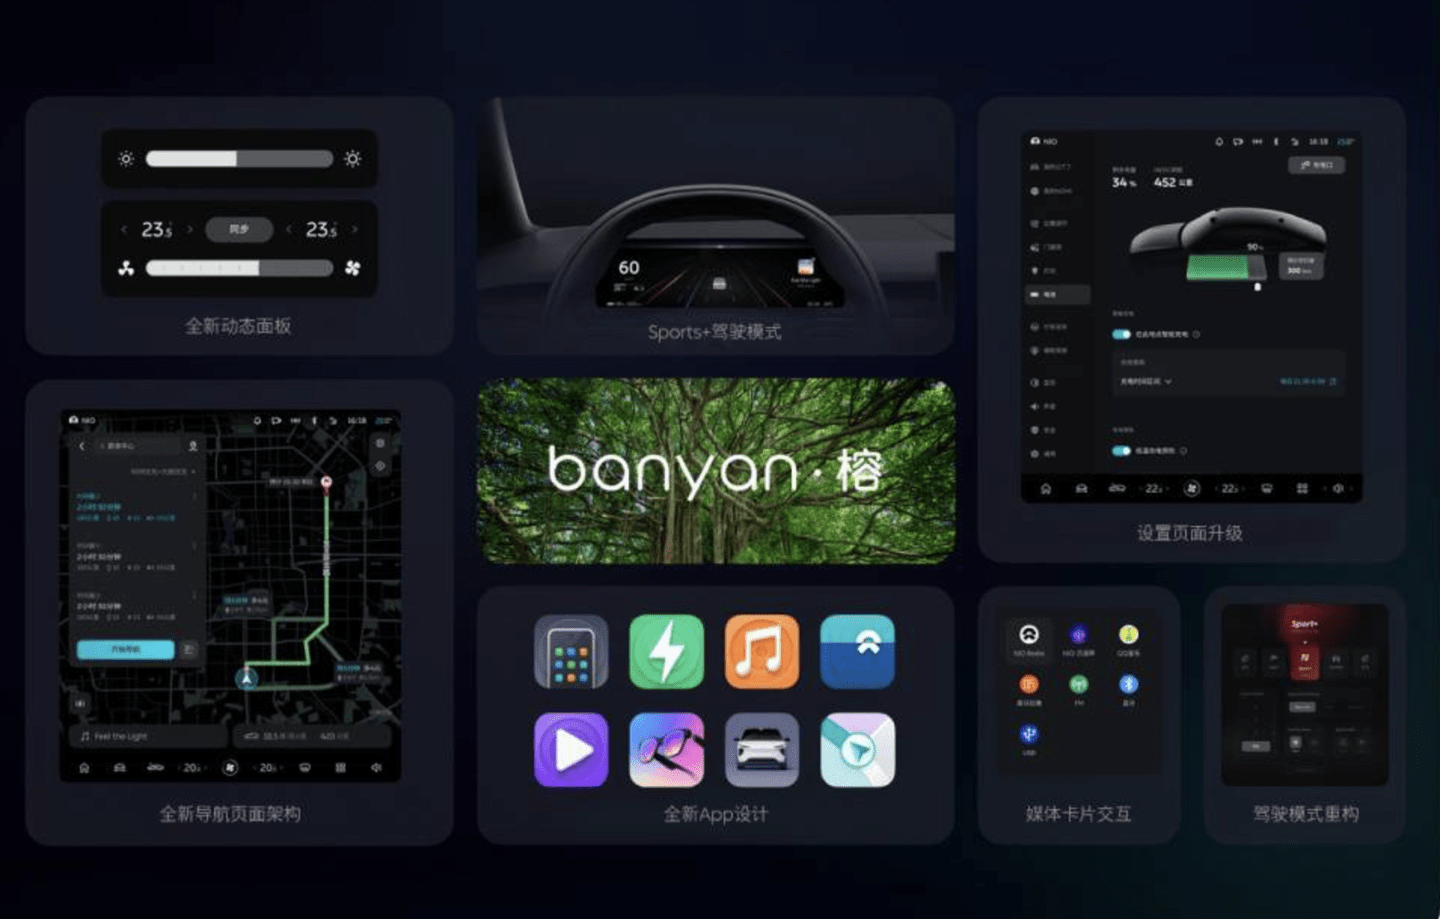 蔚来发布Banyan车机系统2.0.0新版本 全面提升开机、加载、应用启动与触控跟手等操作